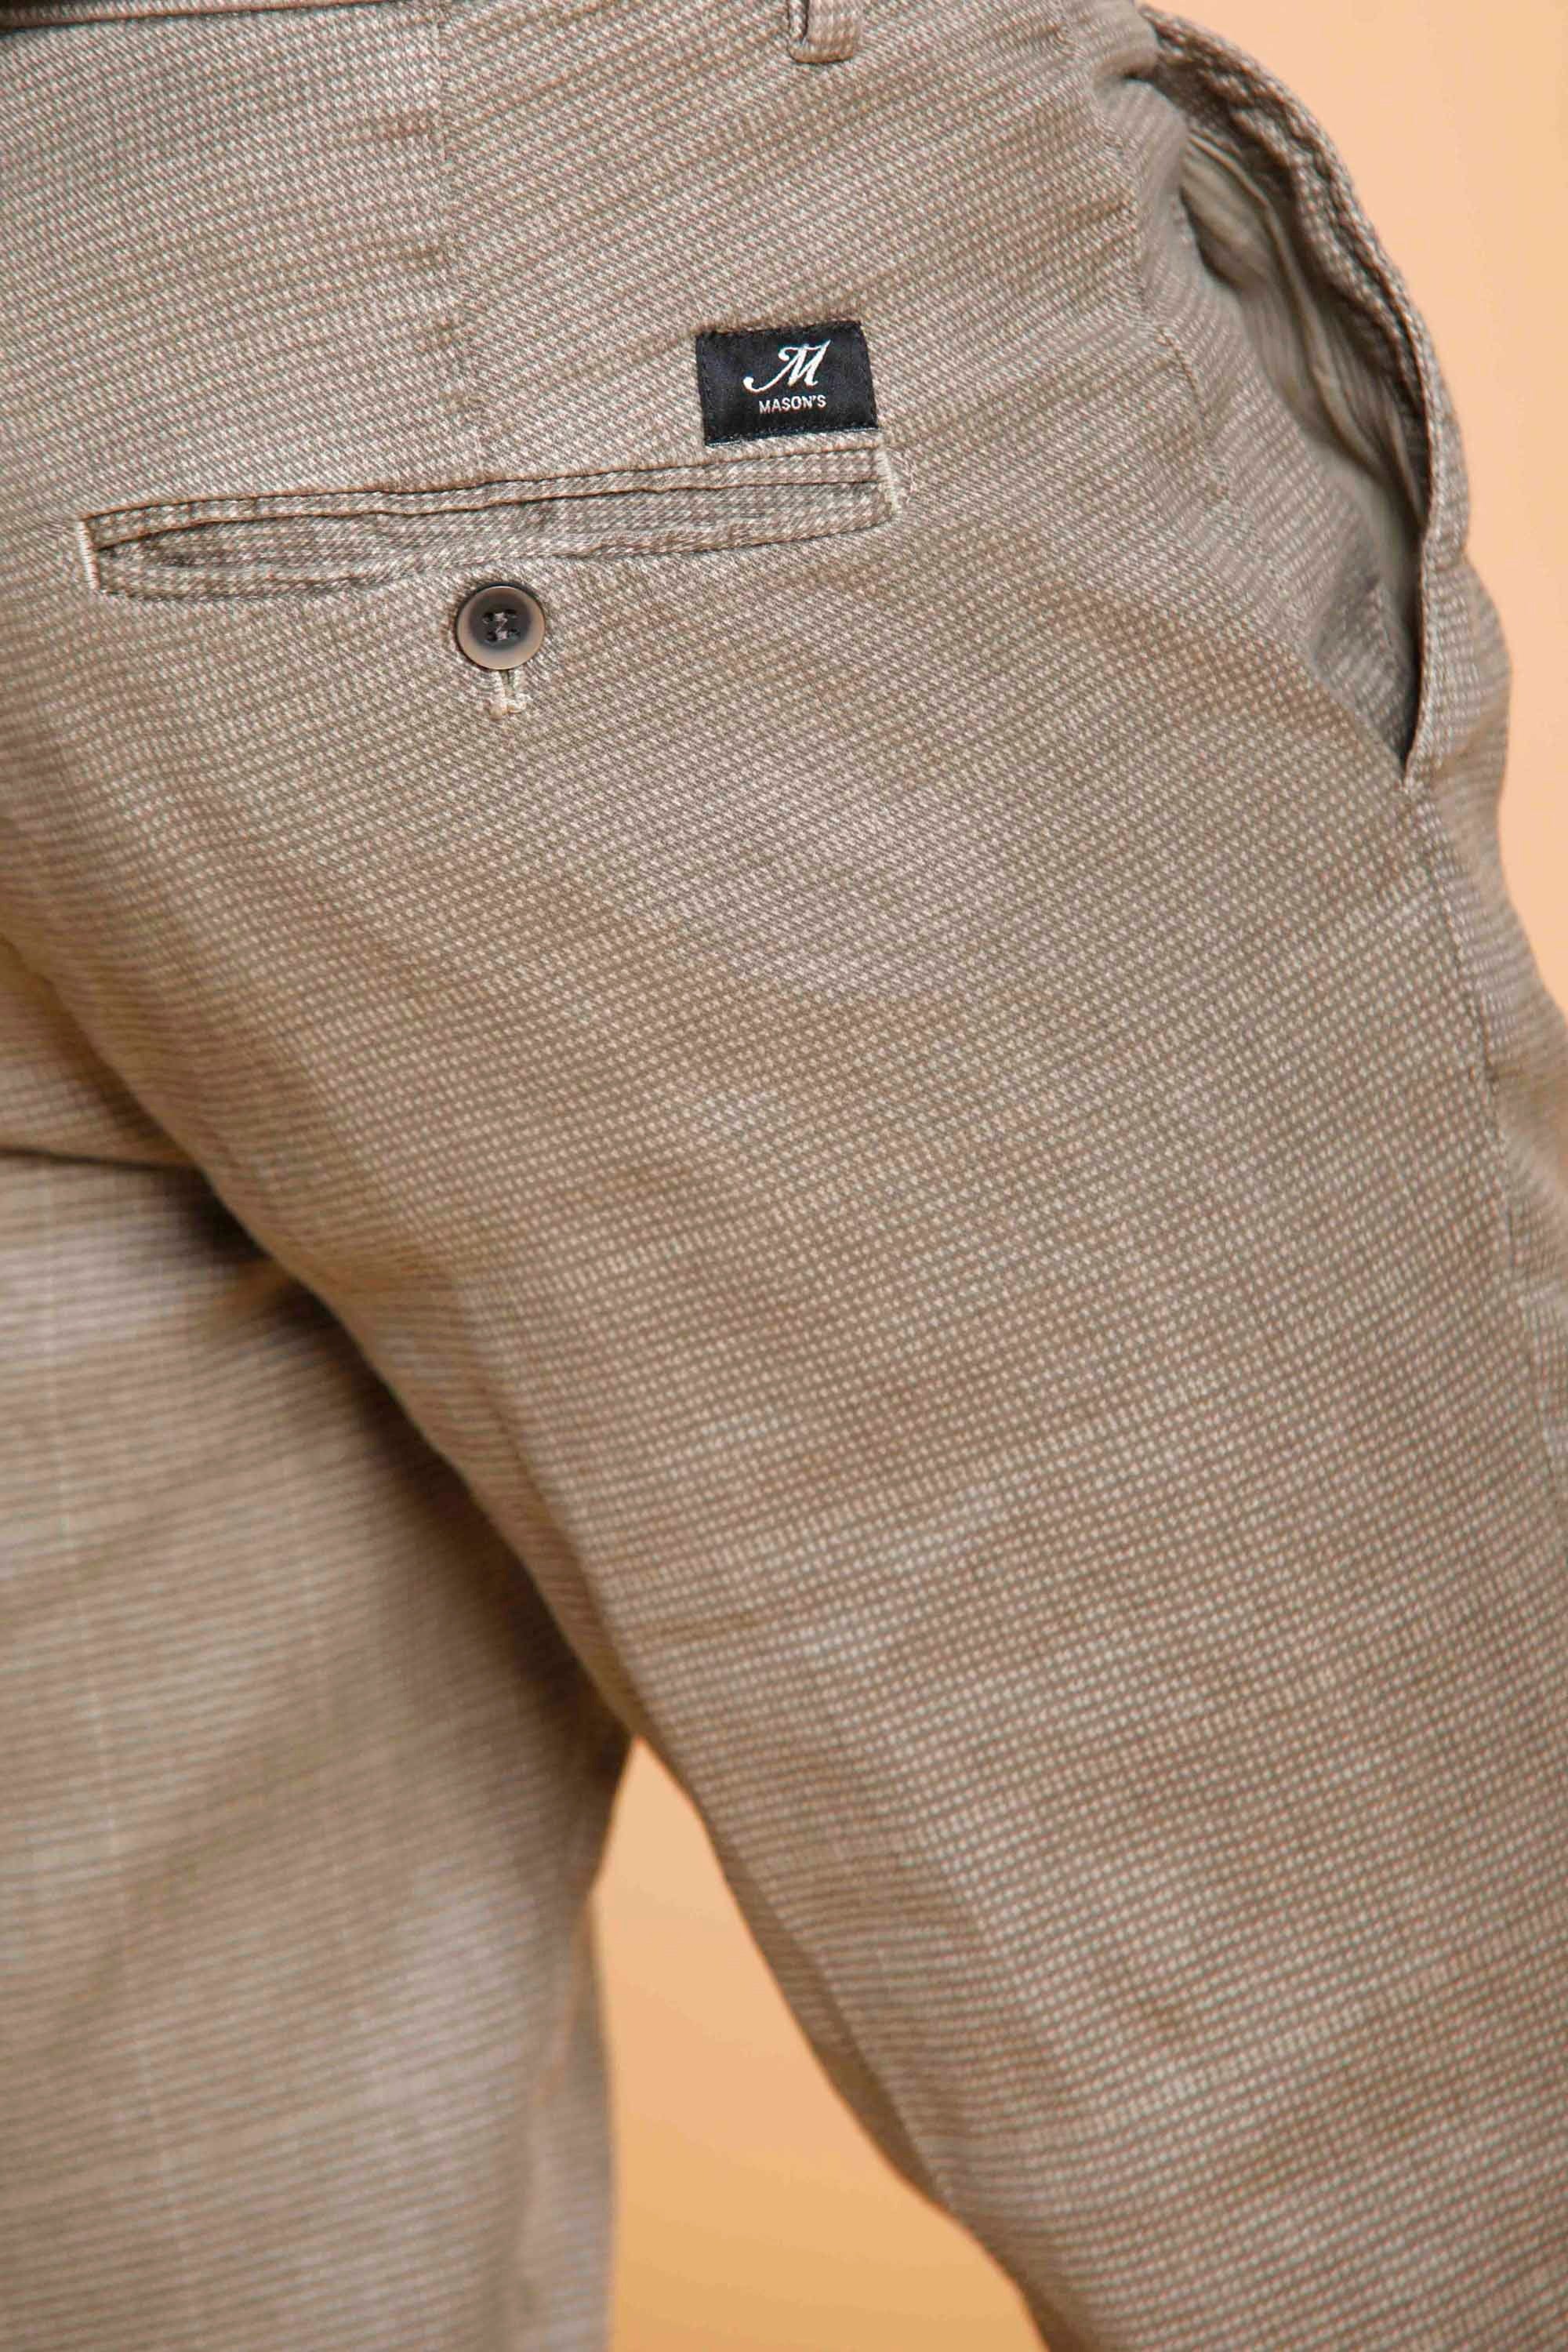 Torino Style pantalone chino uomo in lino e cotone con microdisegno slim fit